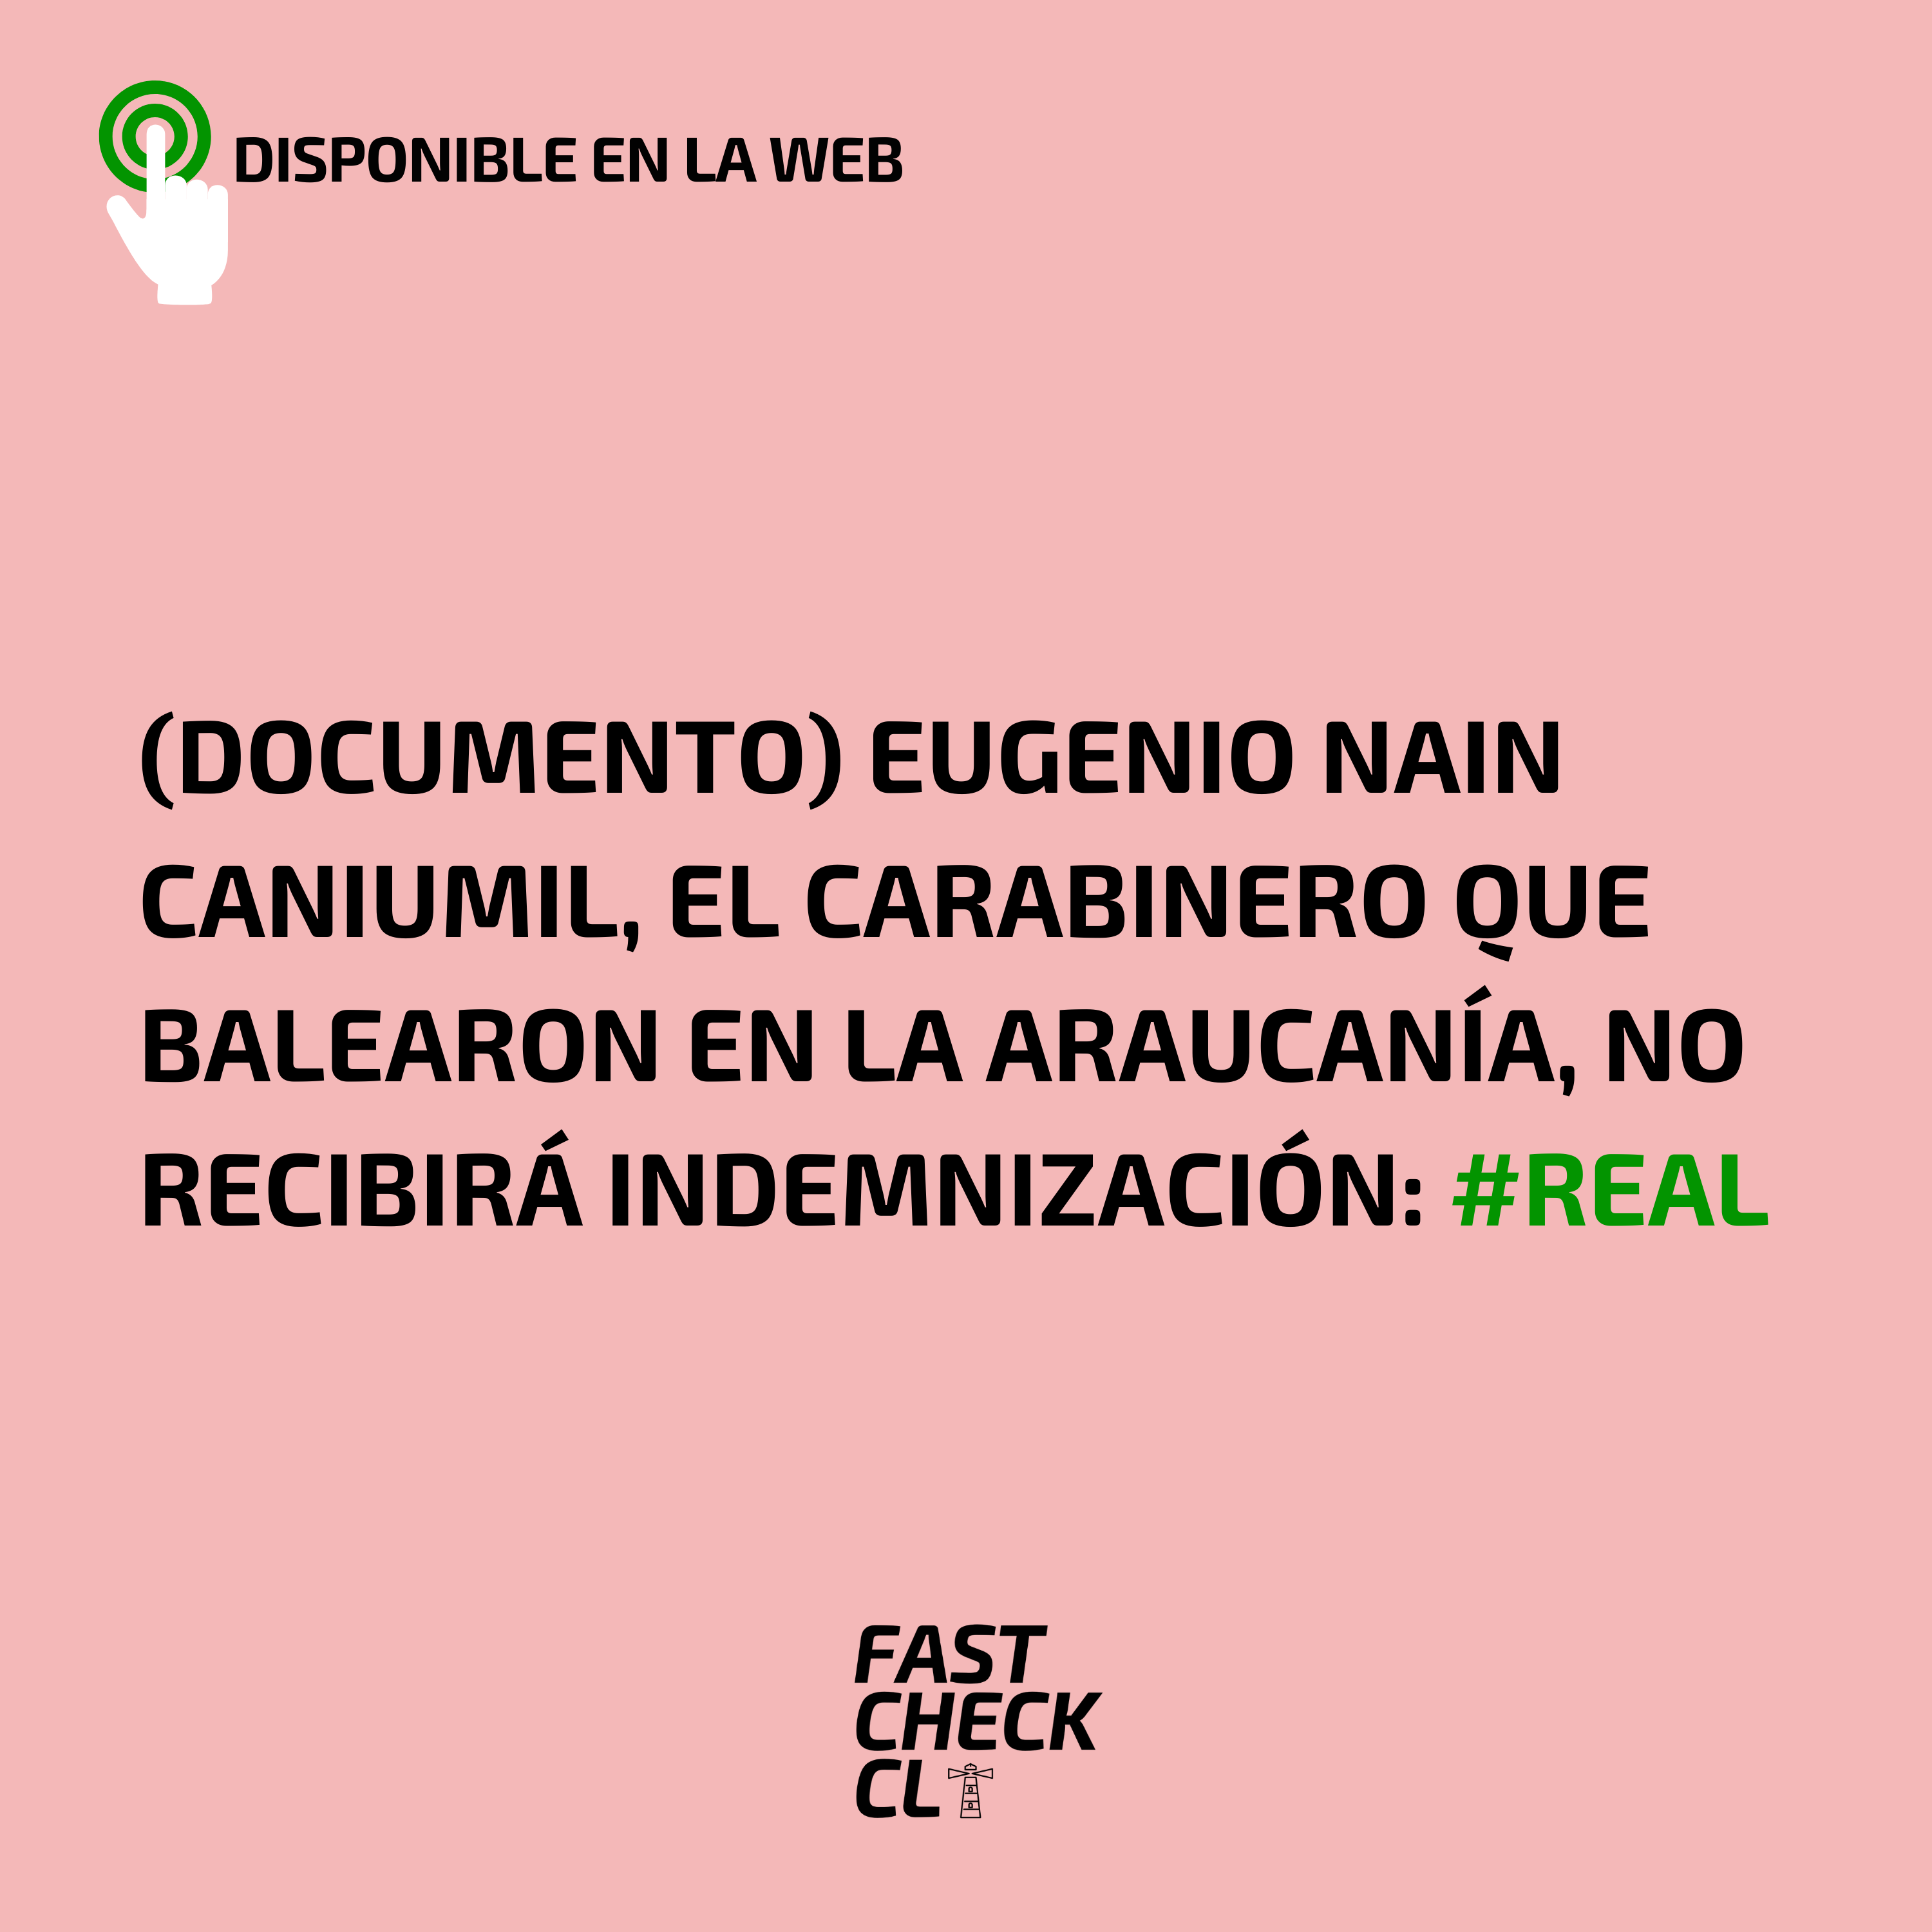 You are currently viewing (Documento) Eugenio Nain Caniumil, el carabinero que balearon en la Araucan铆a, no recibir谩 indemnizaci贸n: #Real